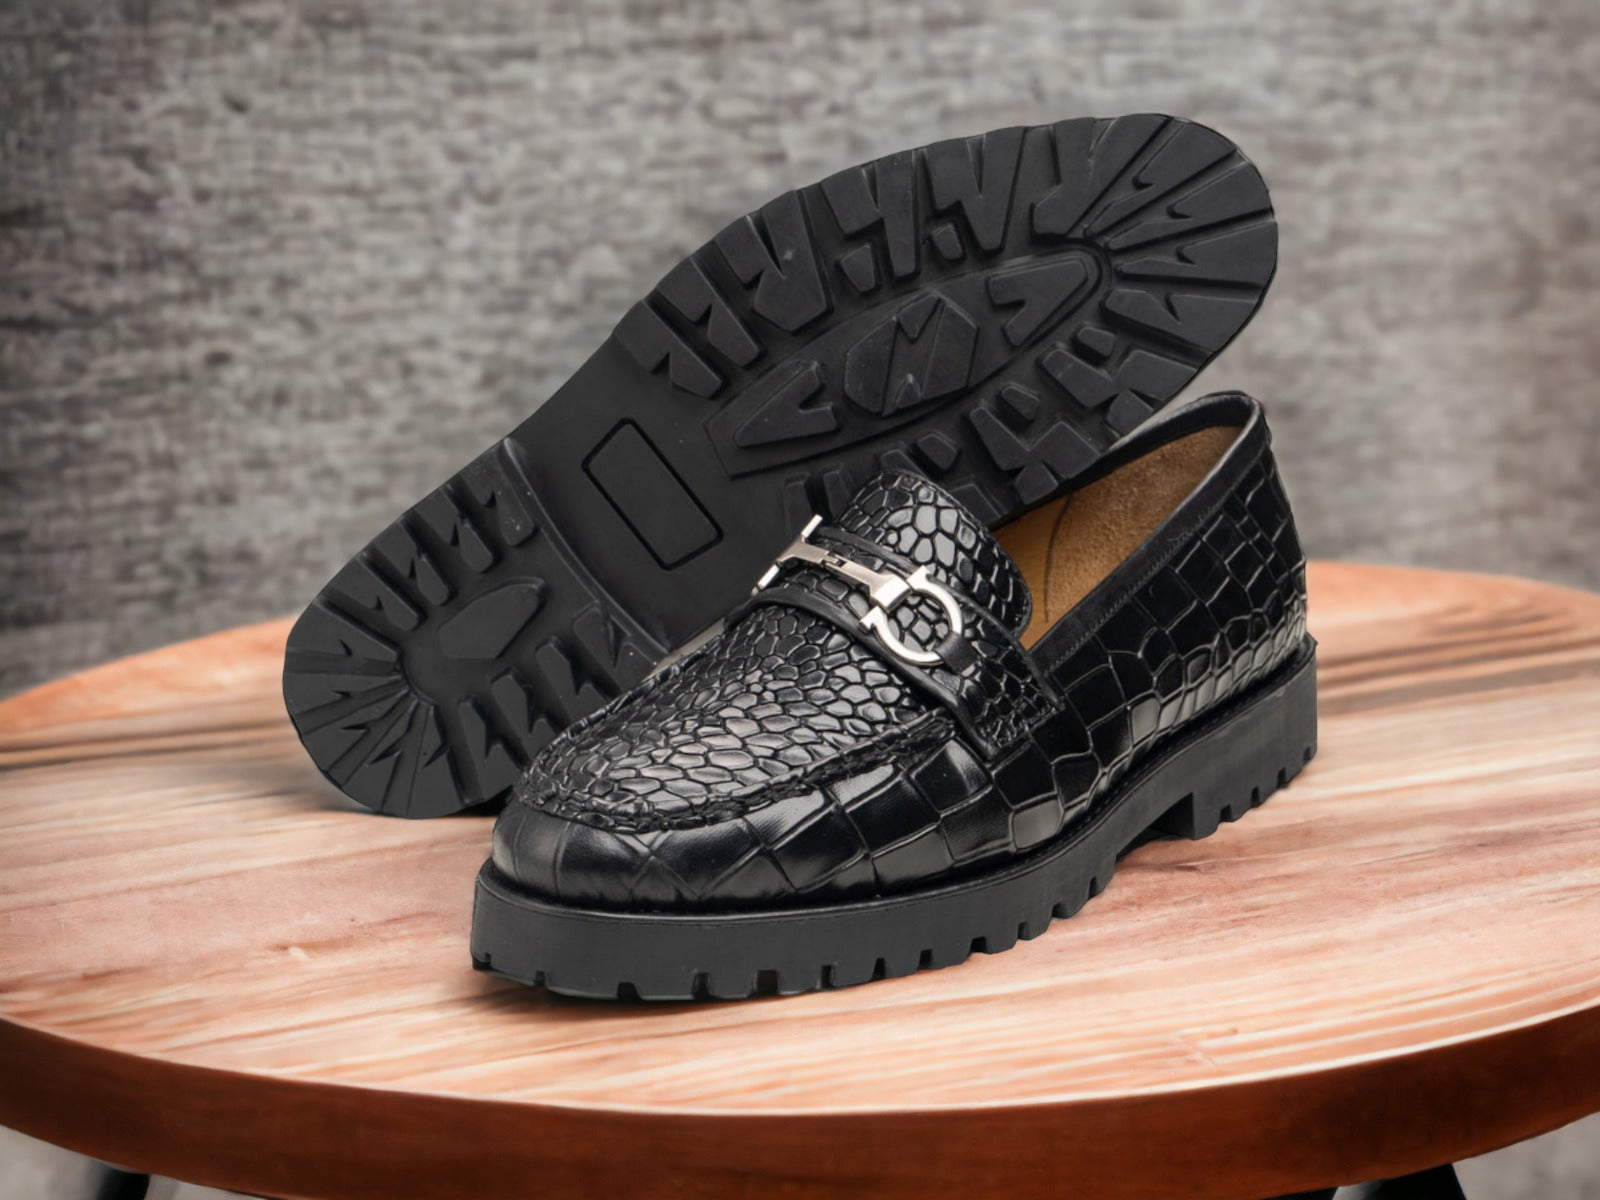 Gucci Loafers for Men, Men's Designer Loafers